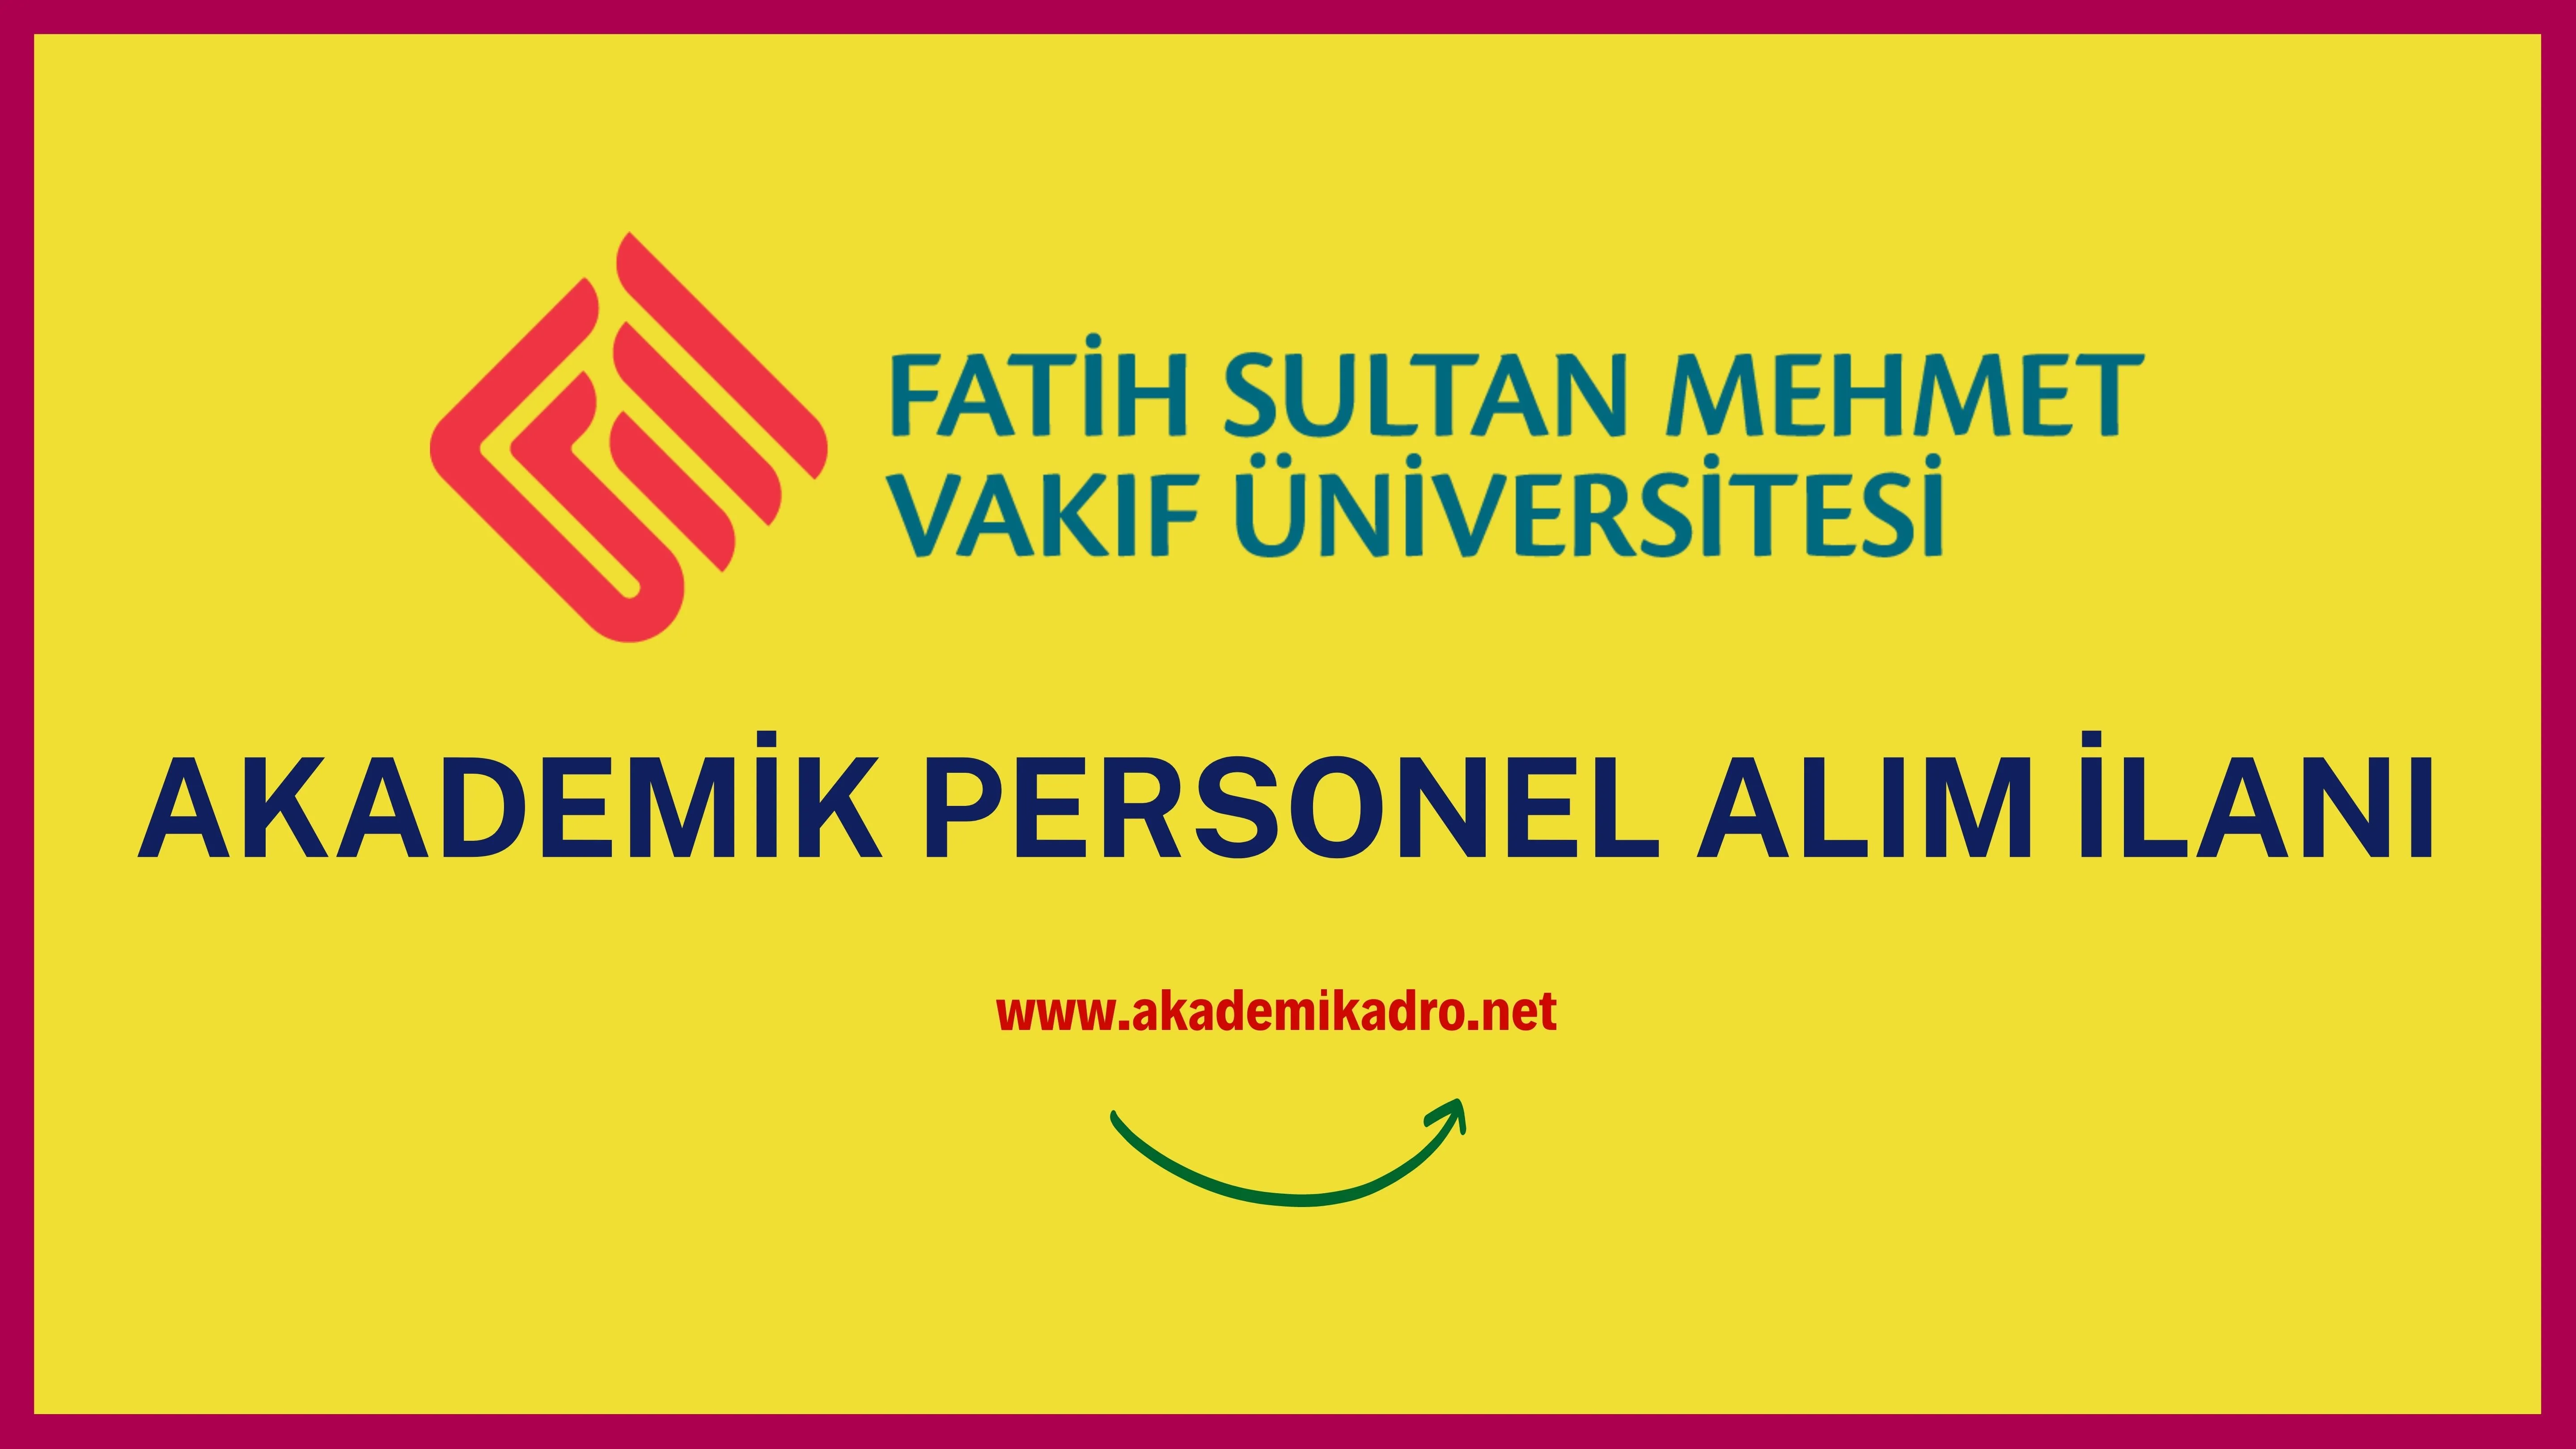 Fatih Sultan Mehmet Vakıf Üniversitesi çeşitli branşlarda 9 Akademik personel alacak. Son başvuru tarihi 24 Ocak 2023.